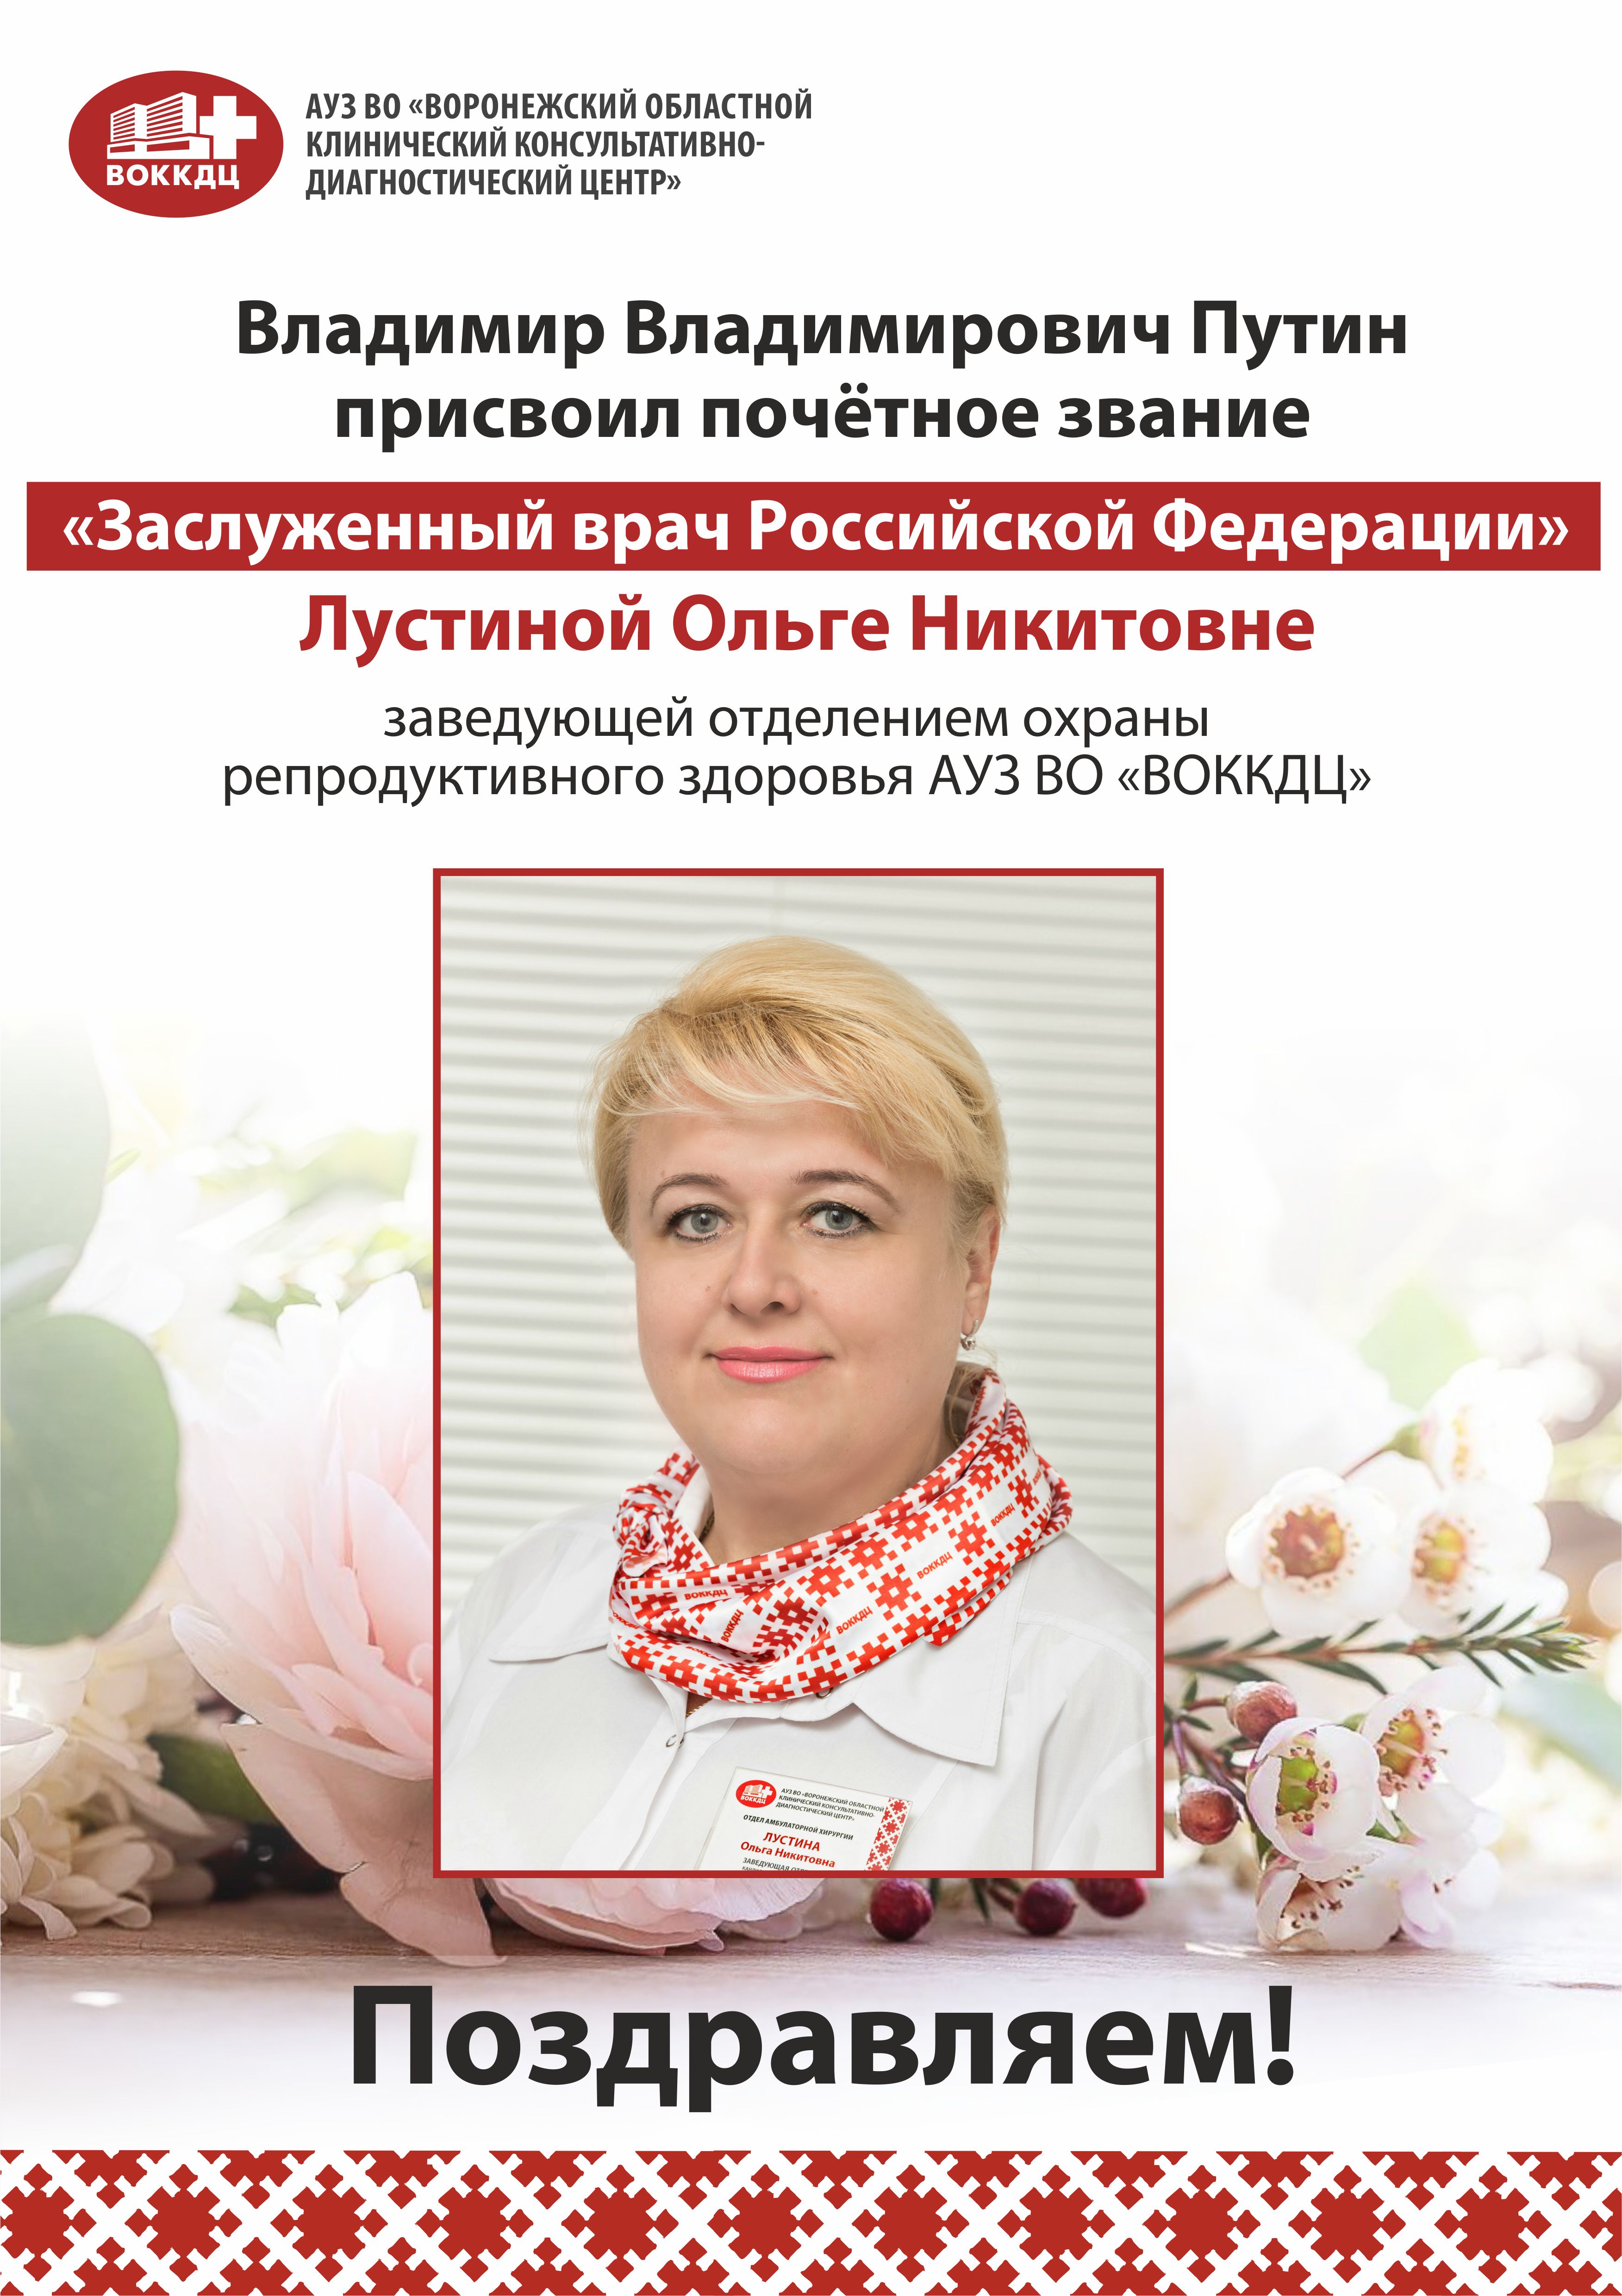 Поздравляем Лустину Ольгу Никитовну с присвоением ей почётного звания  «Лучший врач Российской Федерации».